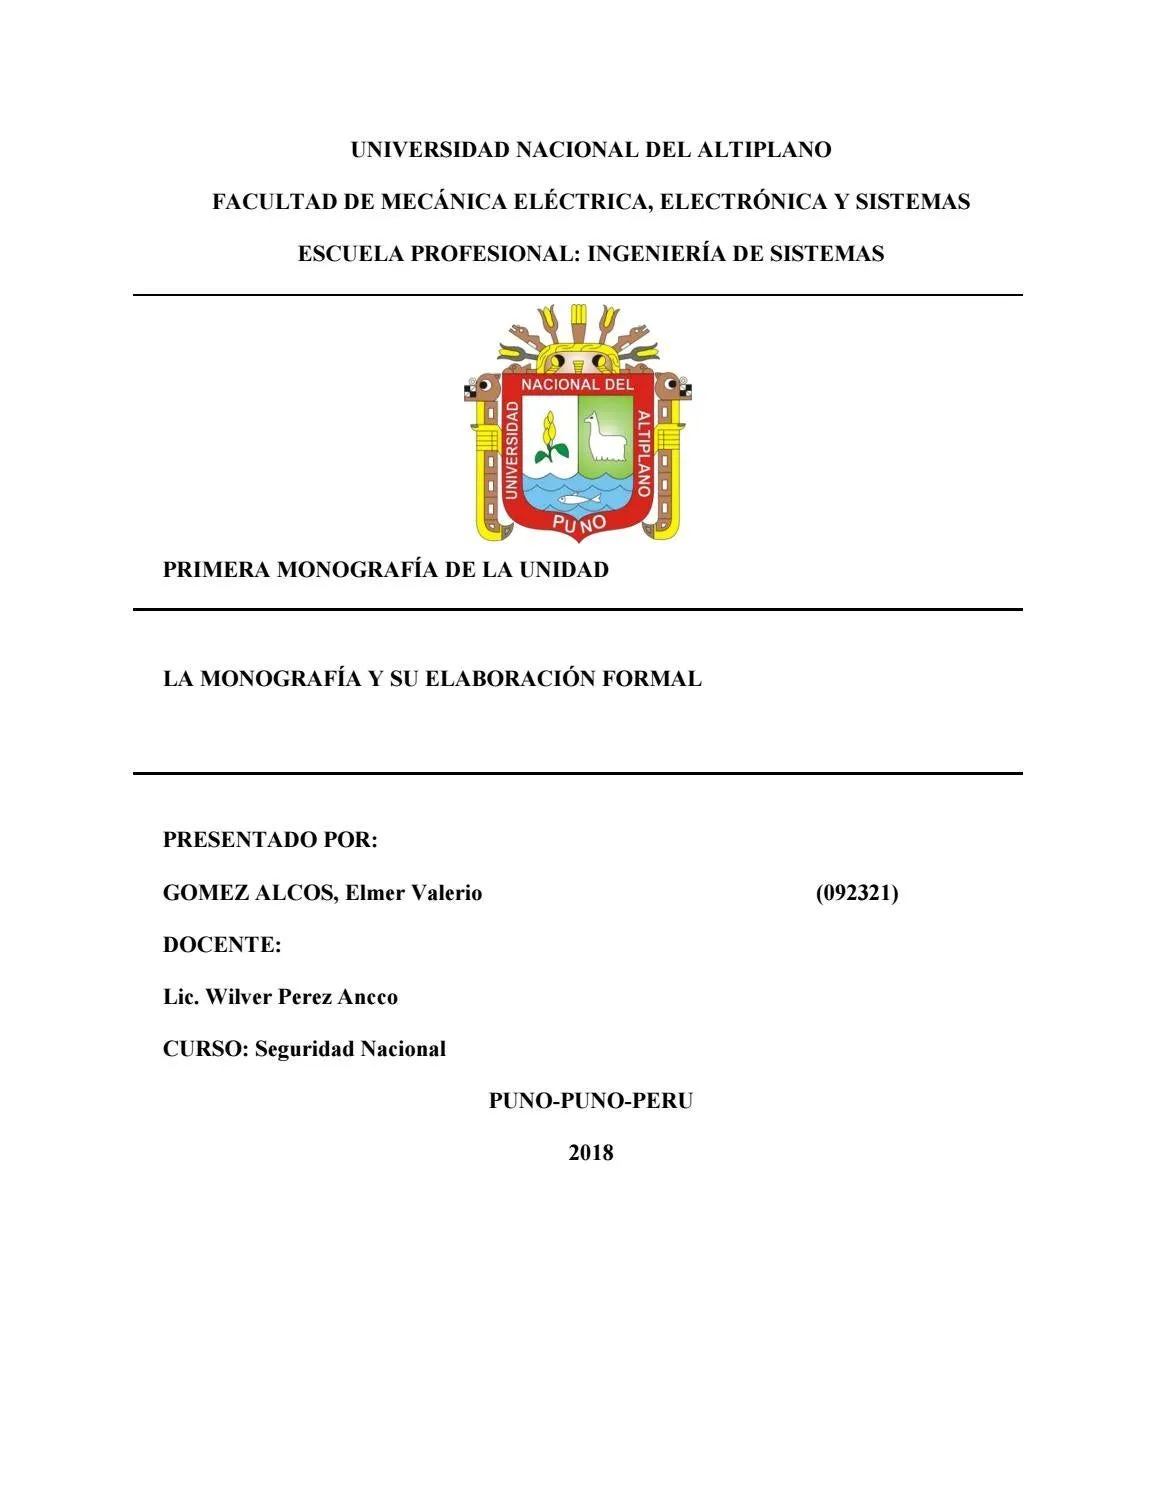 Monografia con Formato APA by Elmer Valerio Gomez Alcos - Issuu